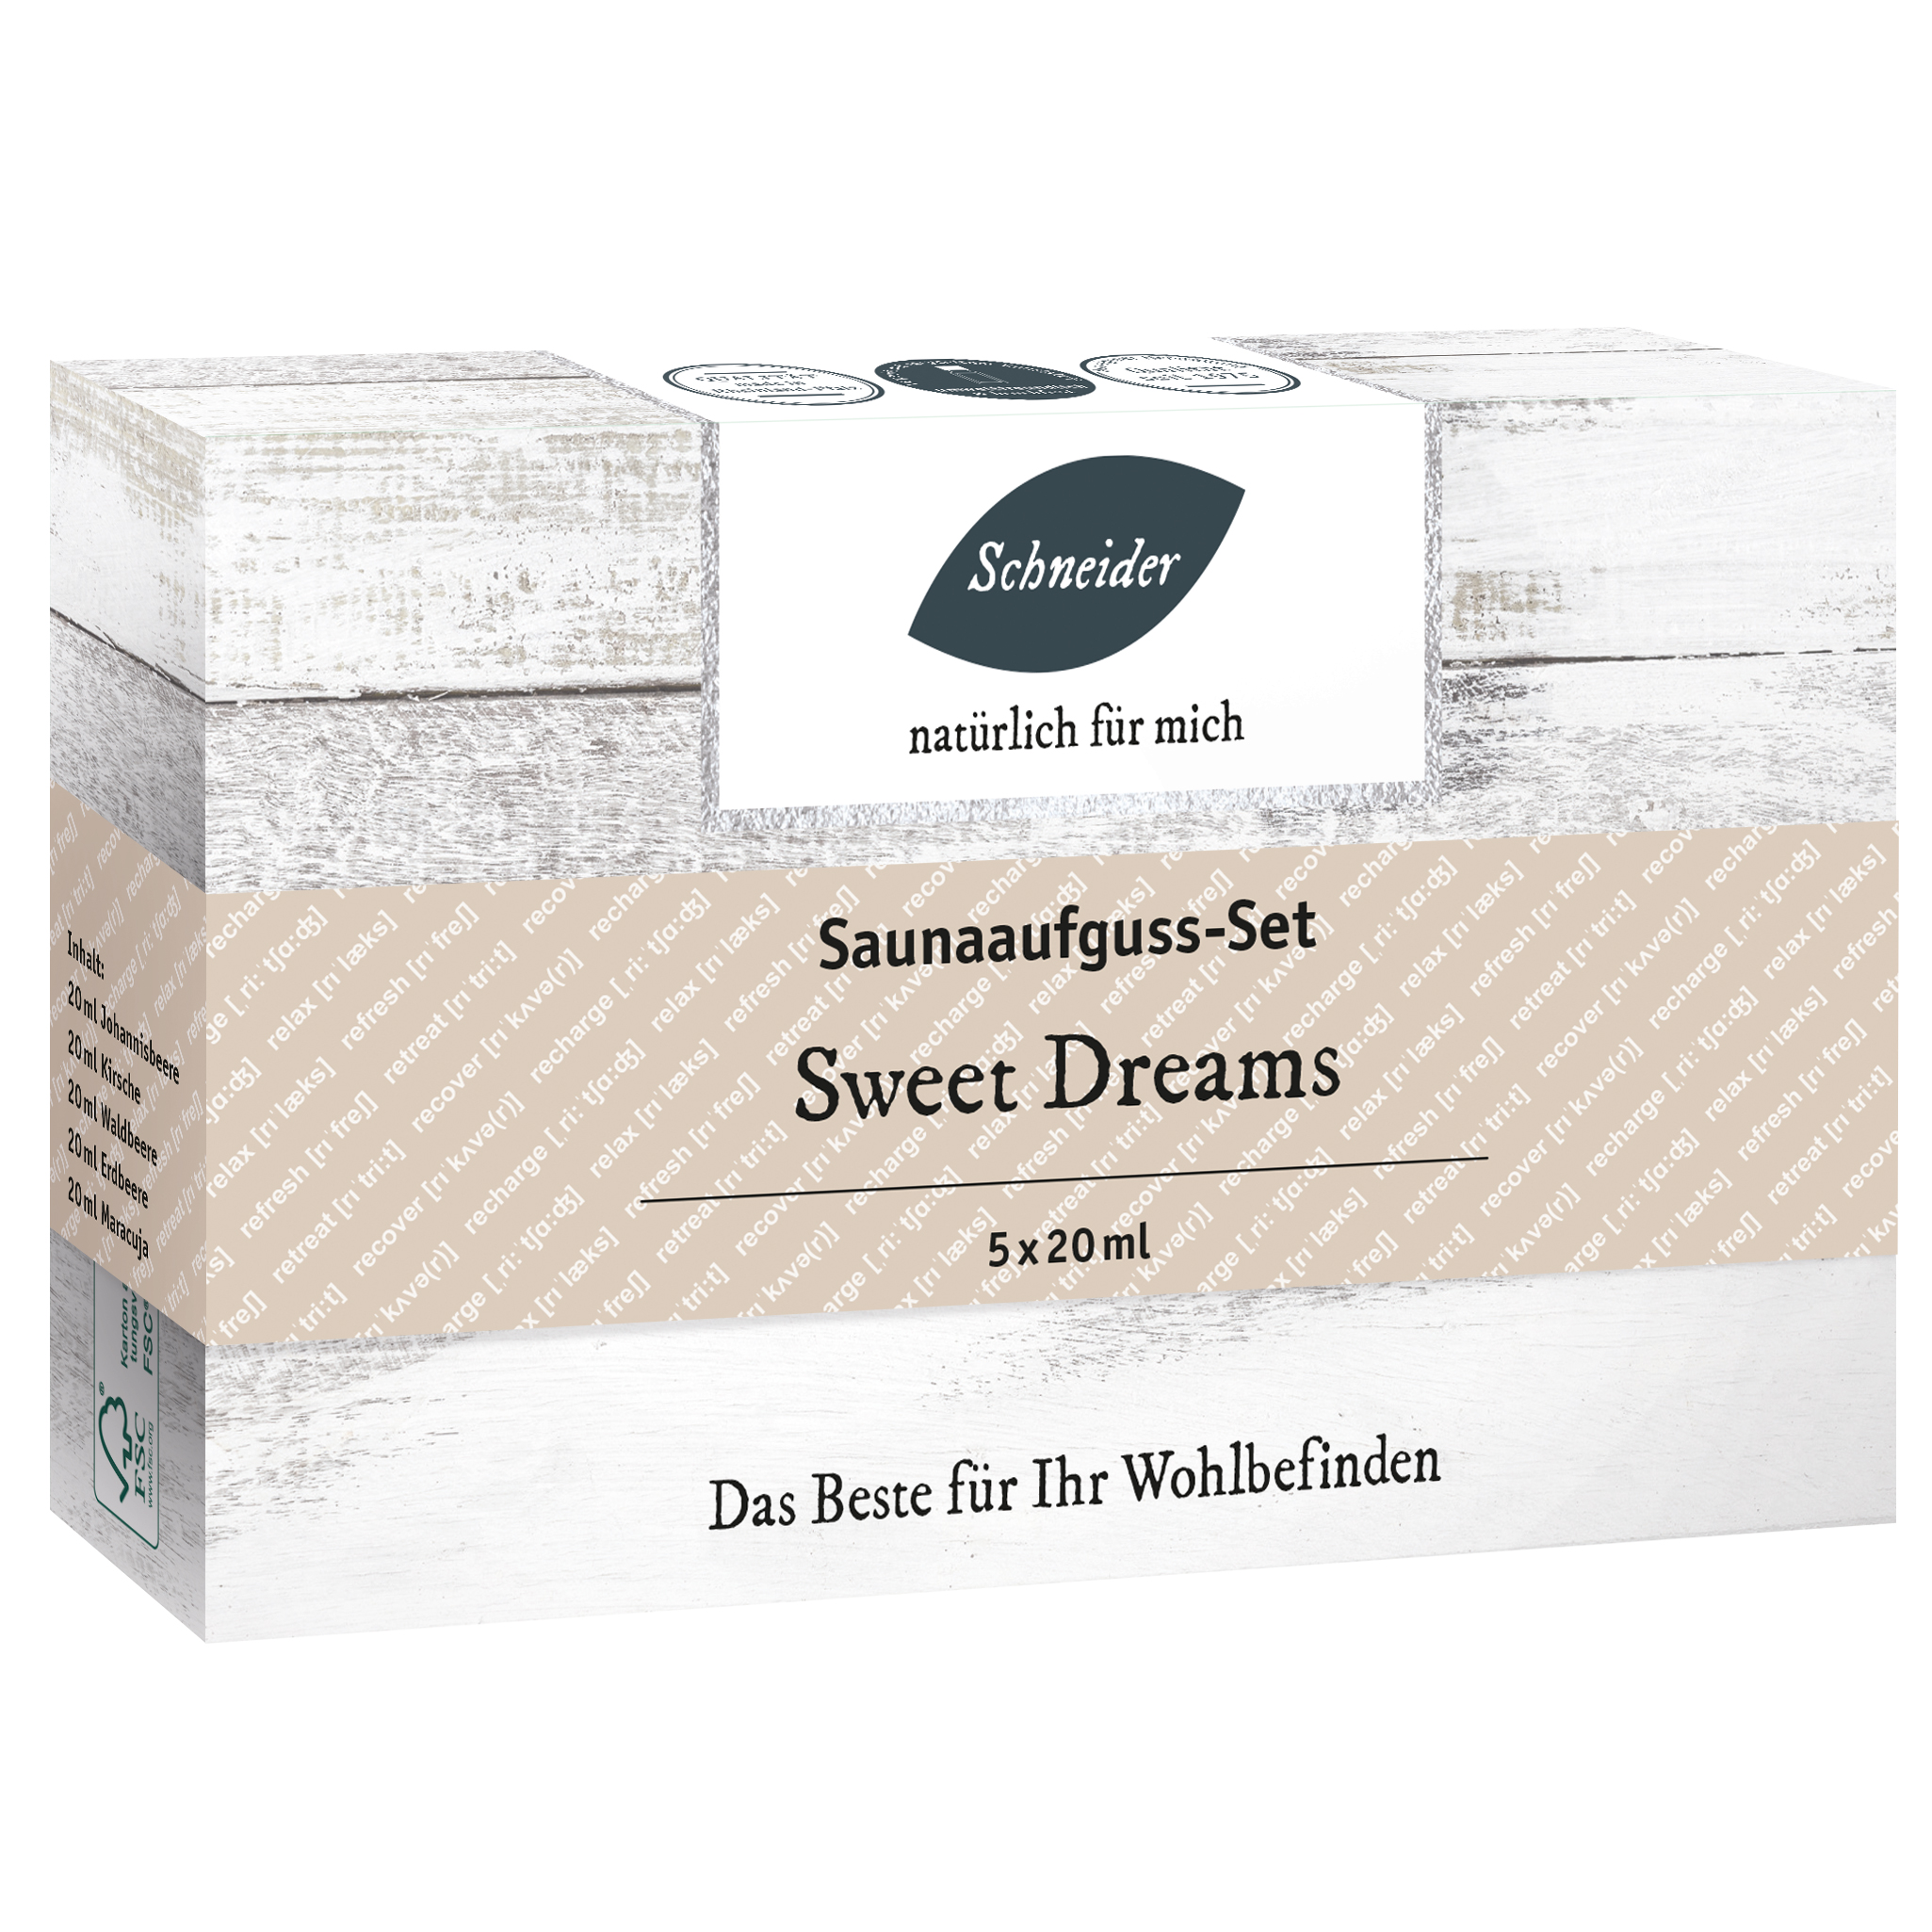 Saunaaufguss-Set - Sweet Dreams